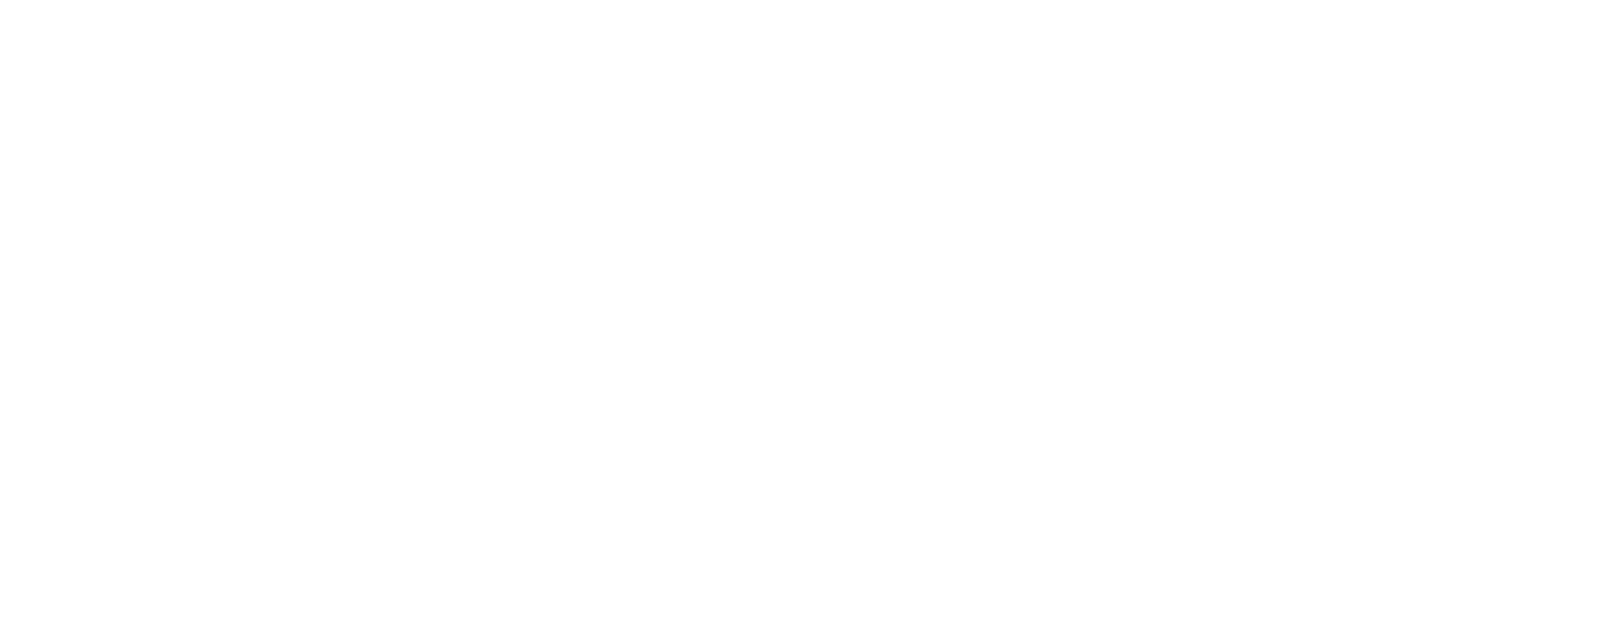 eBay logo for dark backgrounds (transparent PNG)